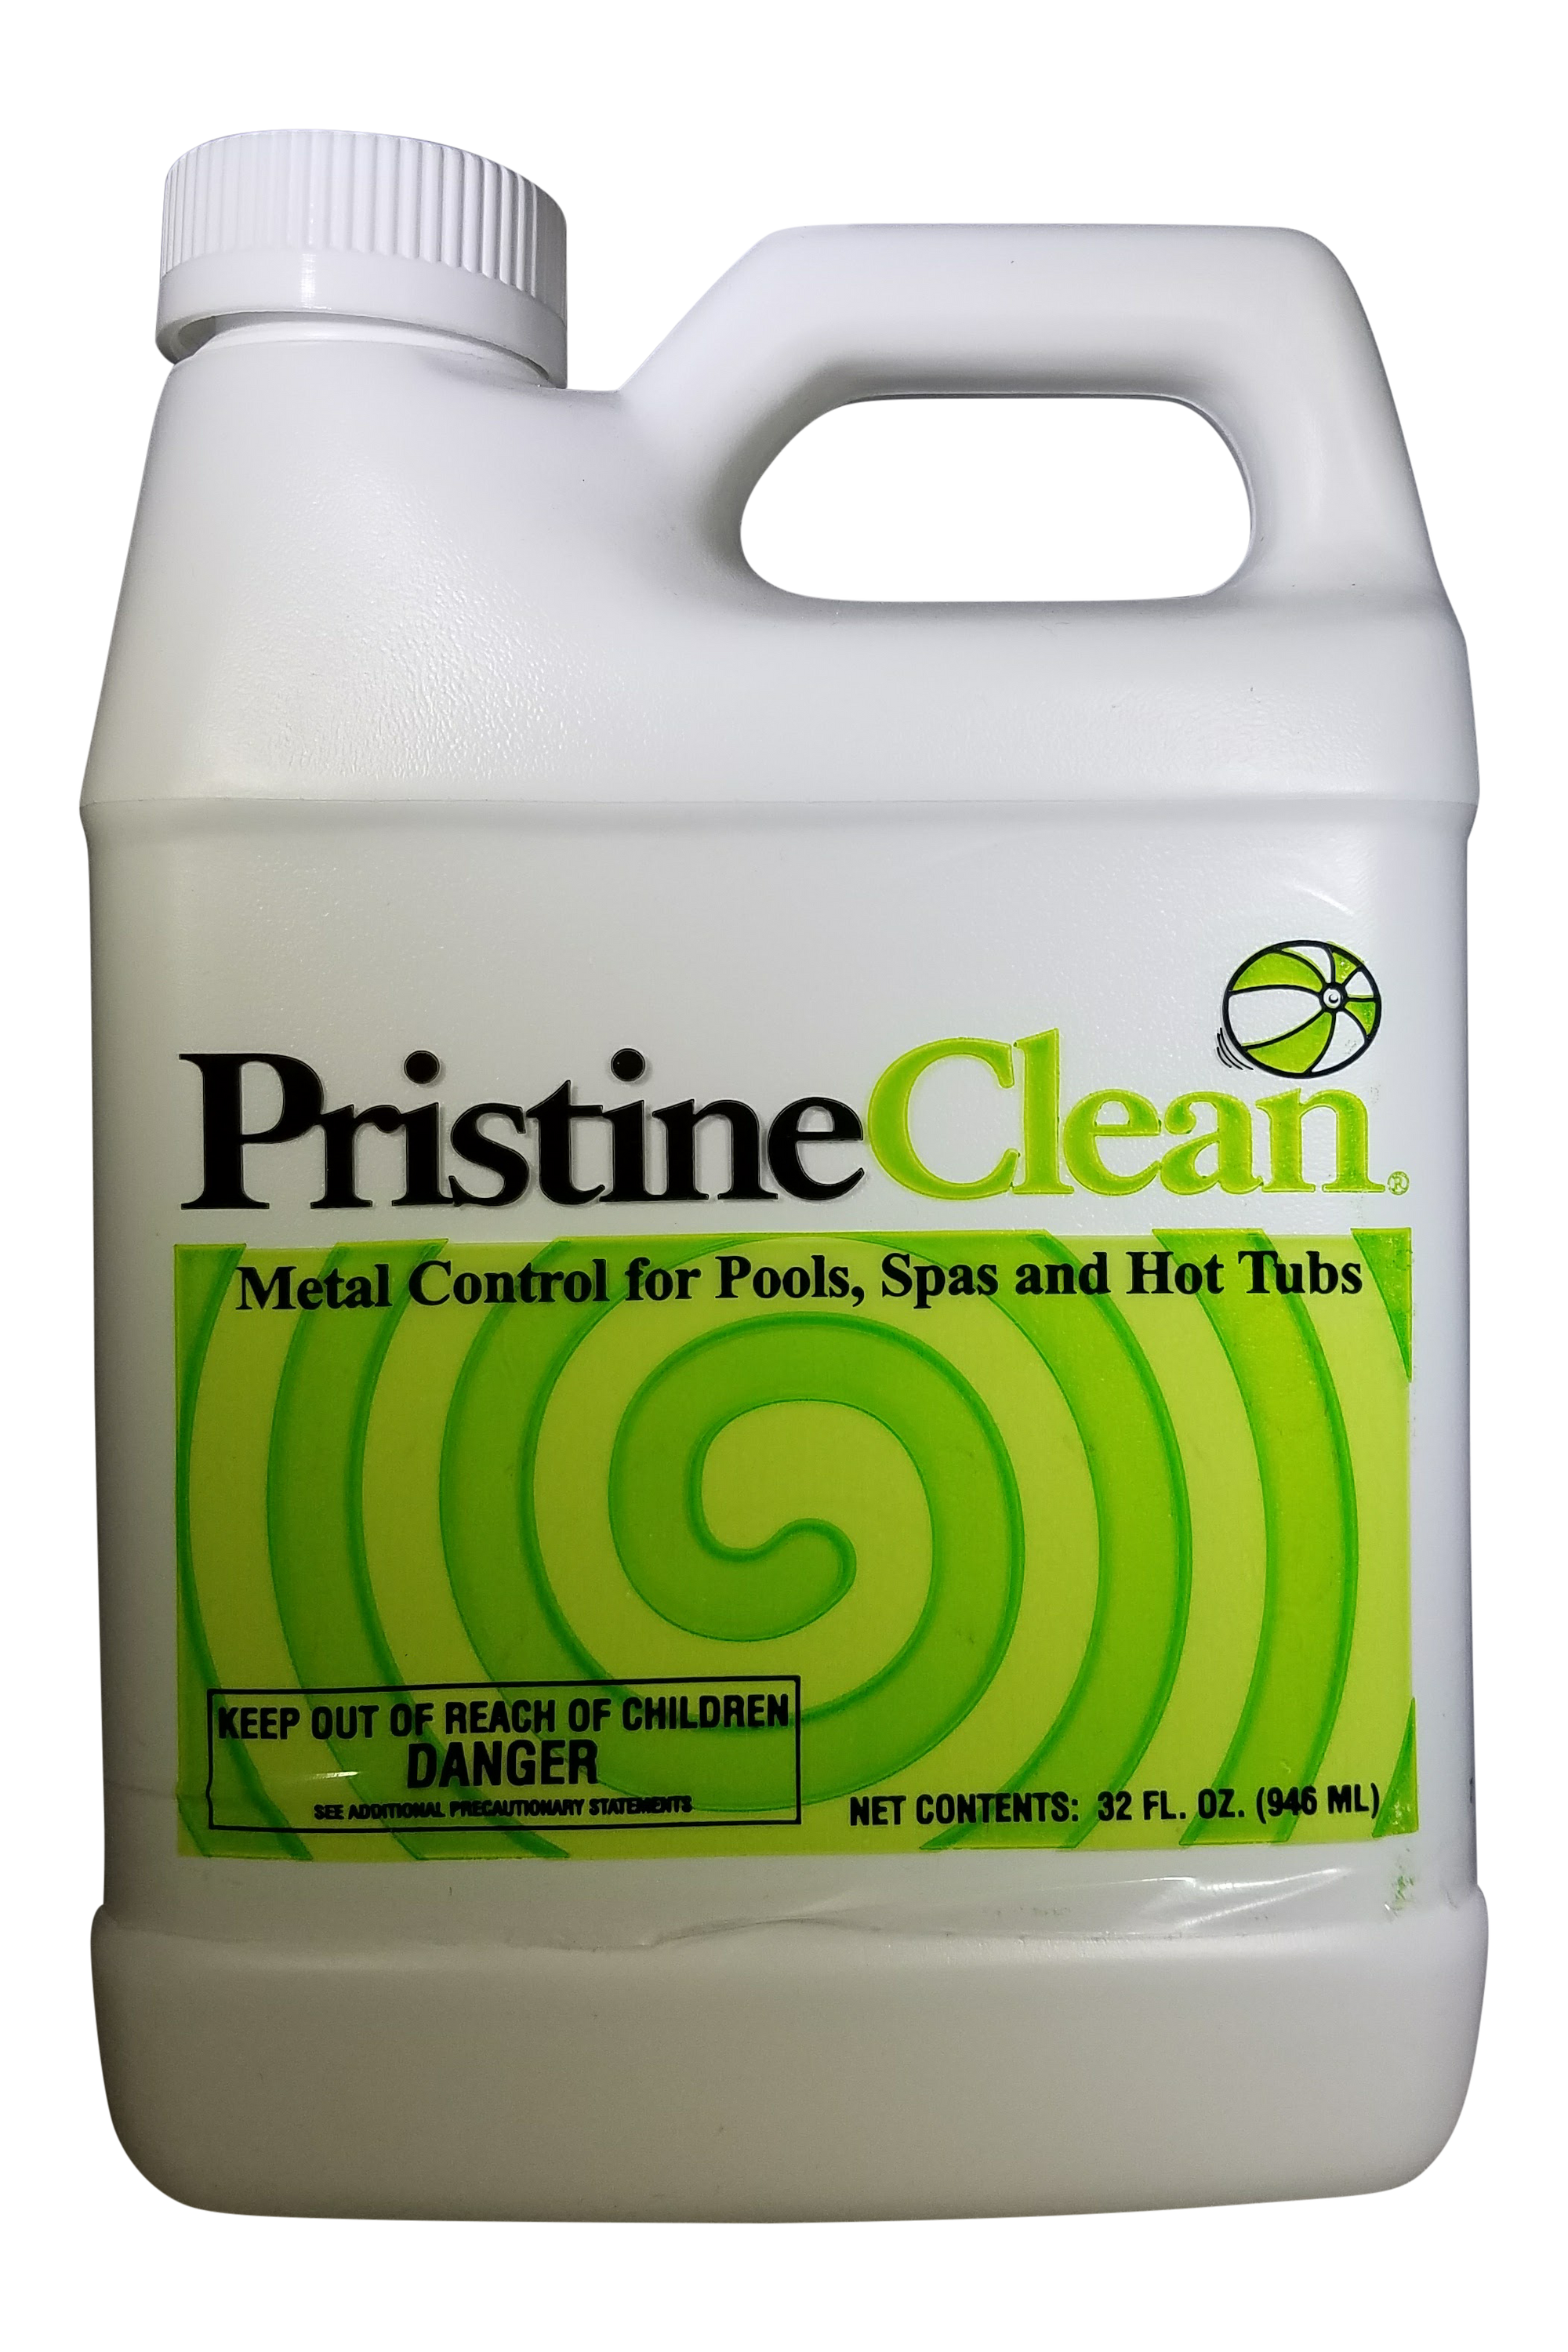 Pristine Clean